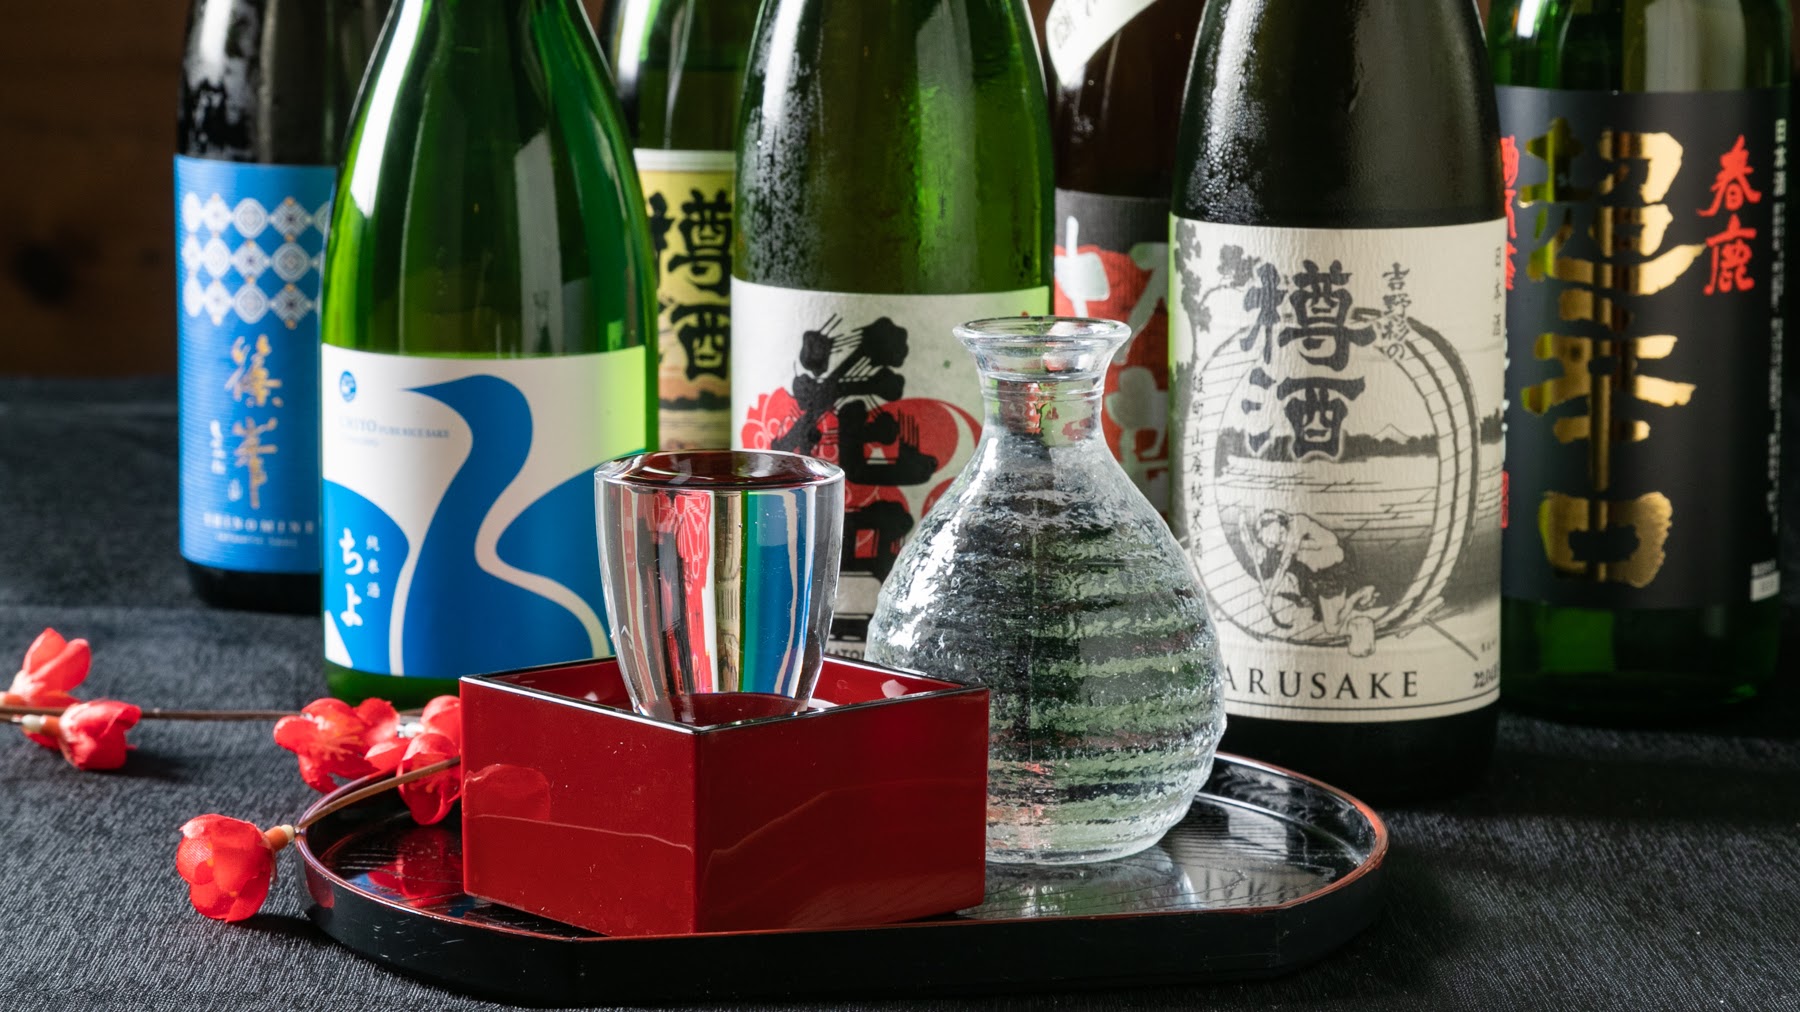 日本清酒発祥の地として、実は歴史の深い奈良。奈良の地酒を、お食事のお供にいかがでしょうか。